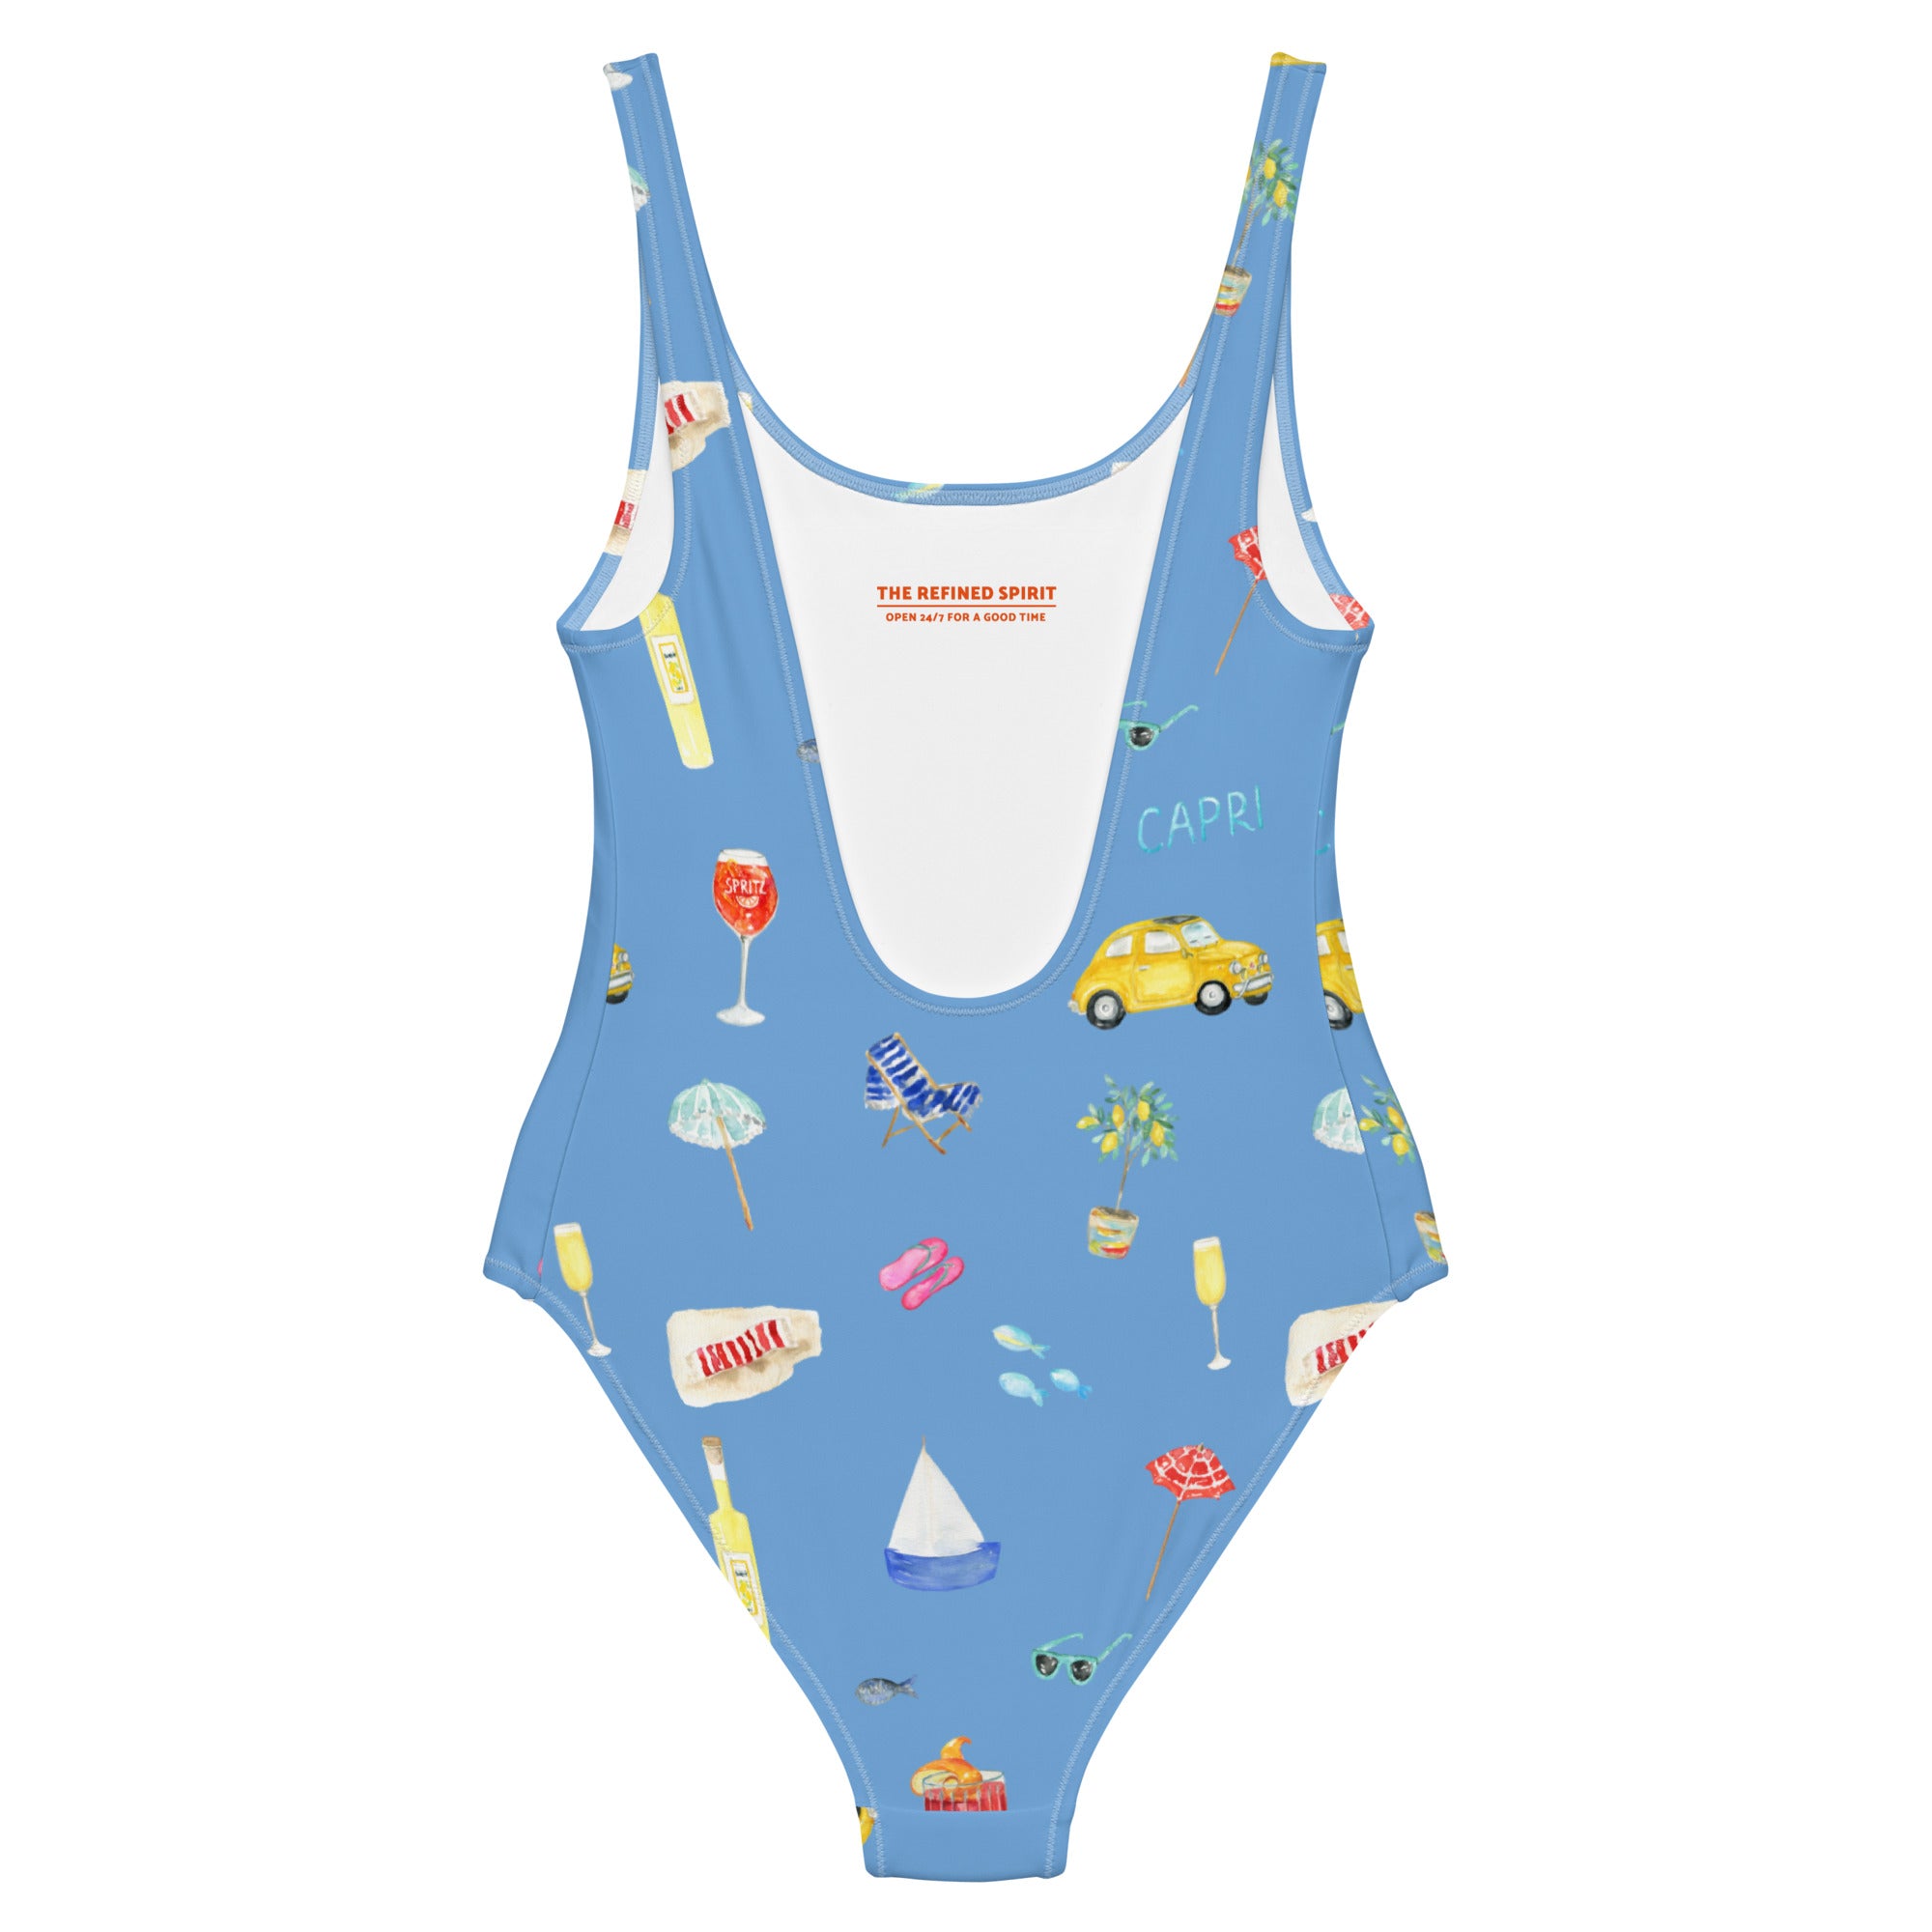 Capri - Swimsuit